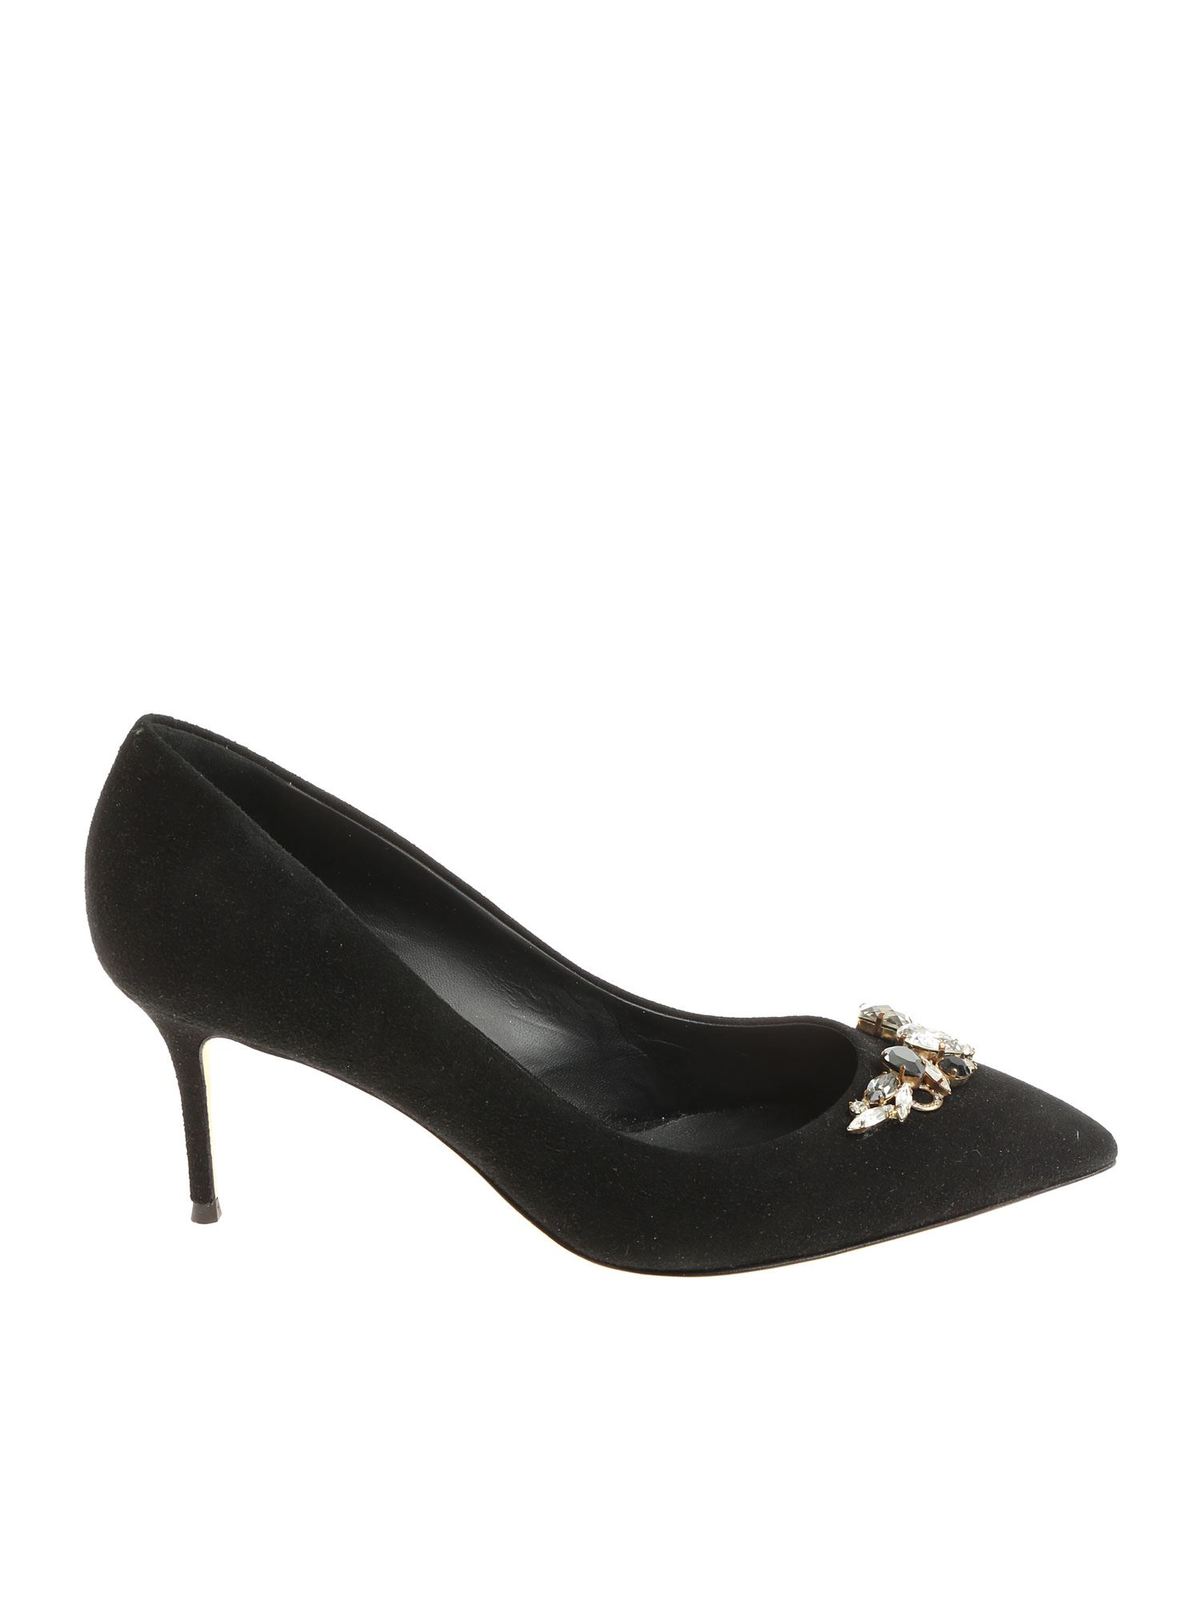 Court shoes - Black Lucrezia pumps